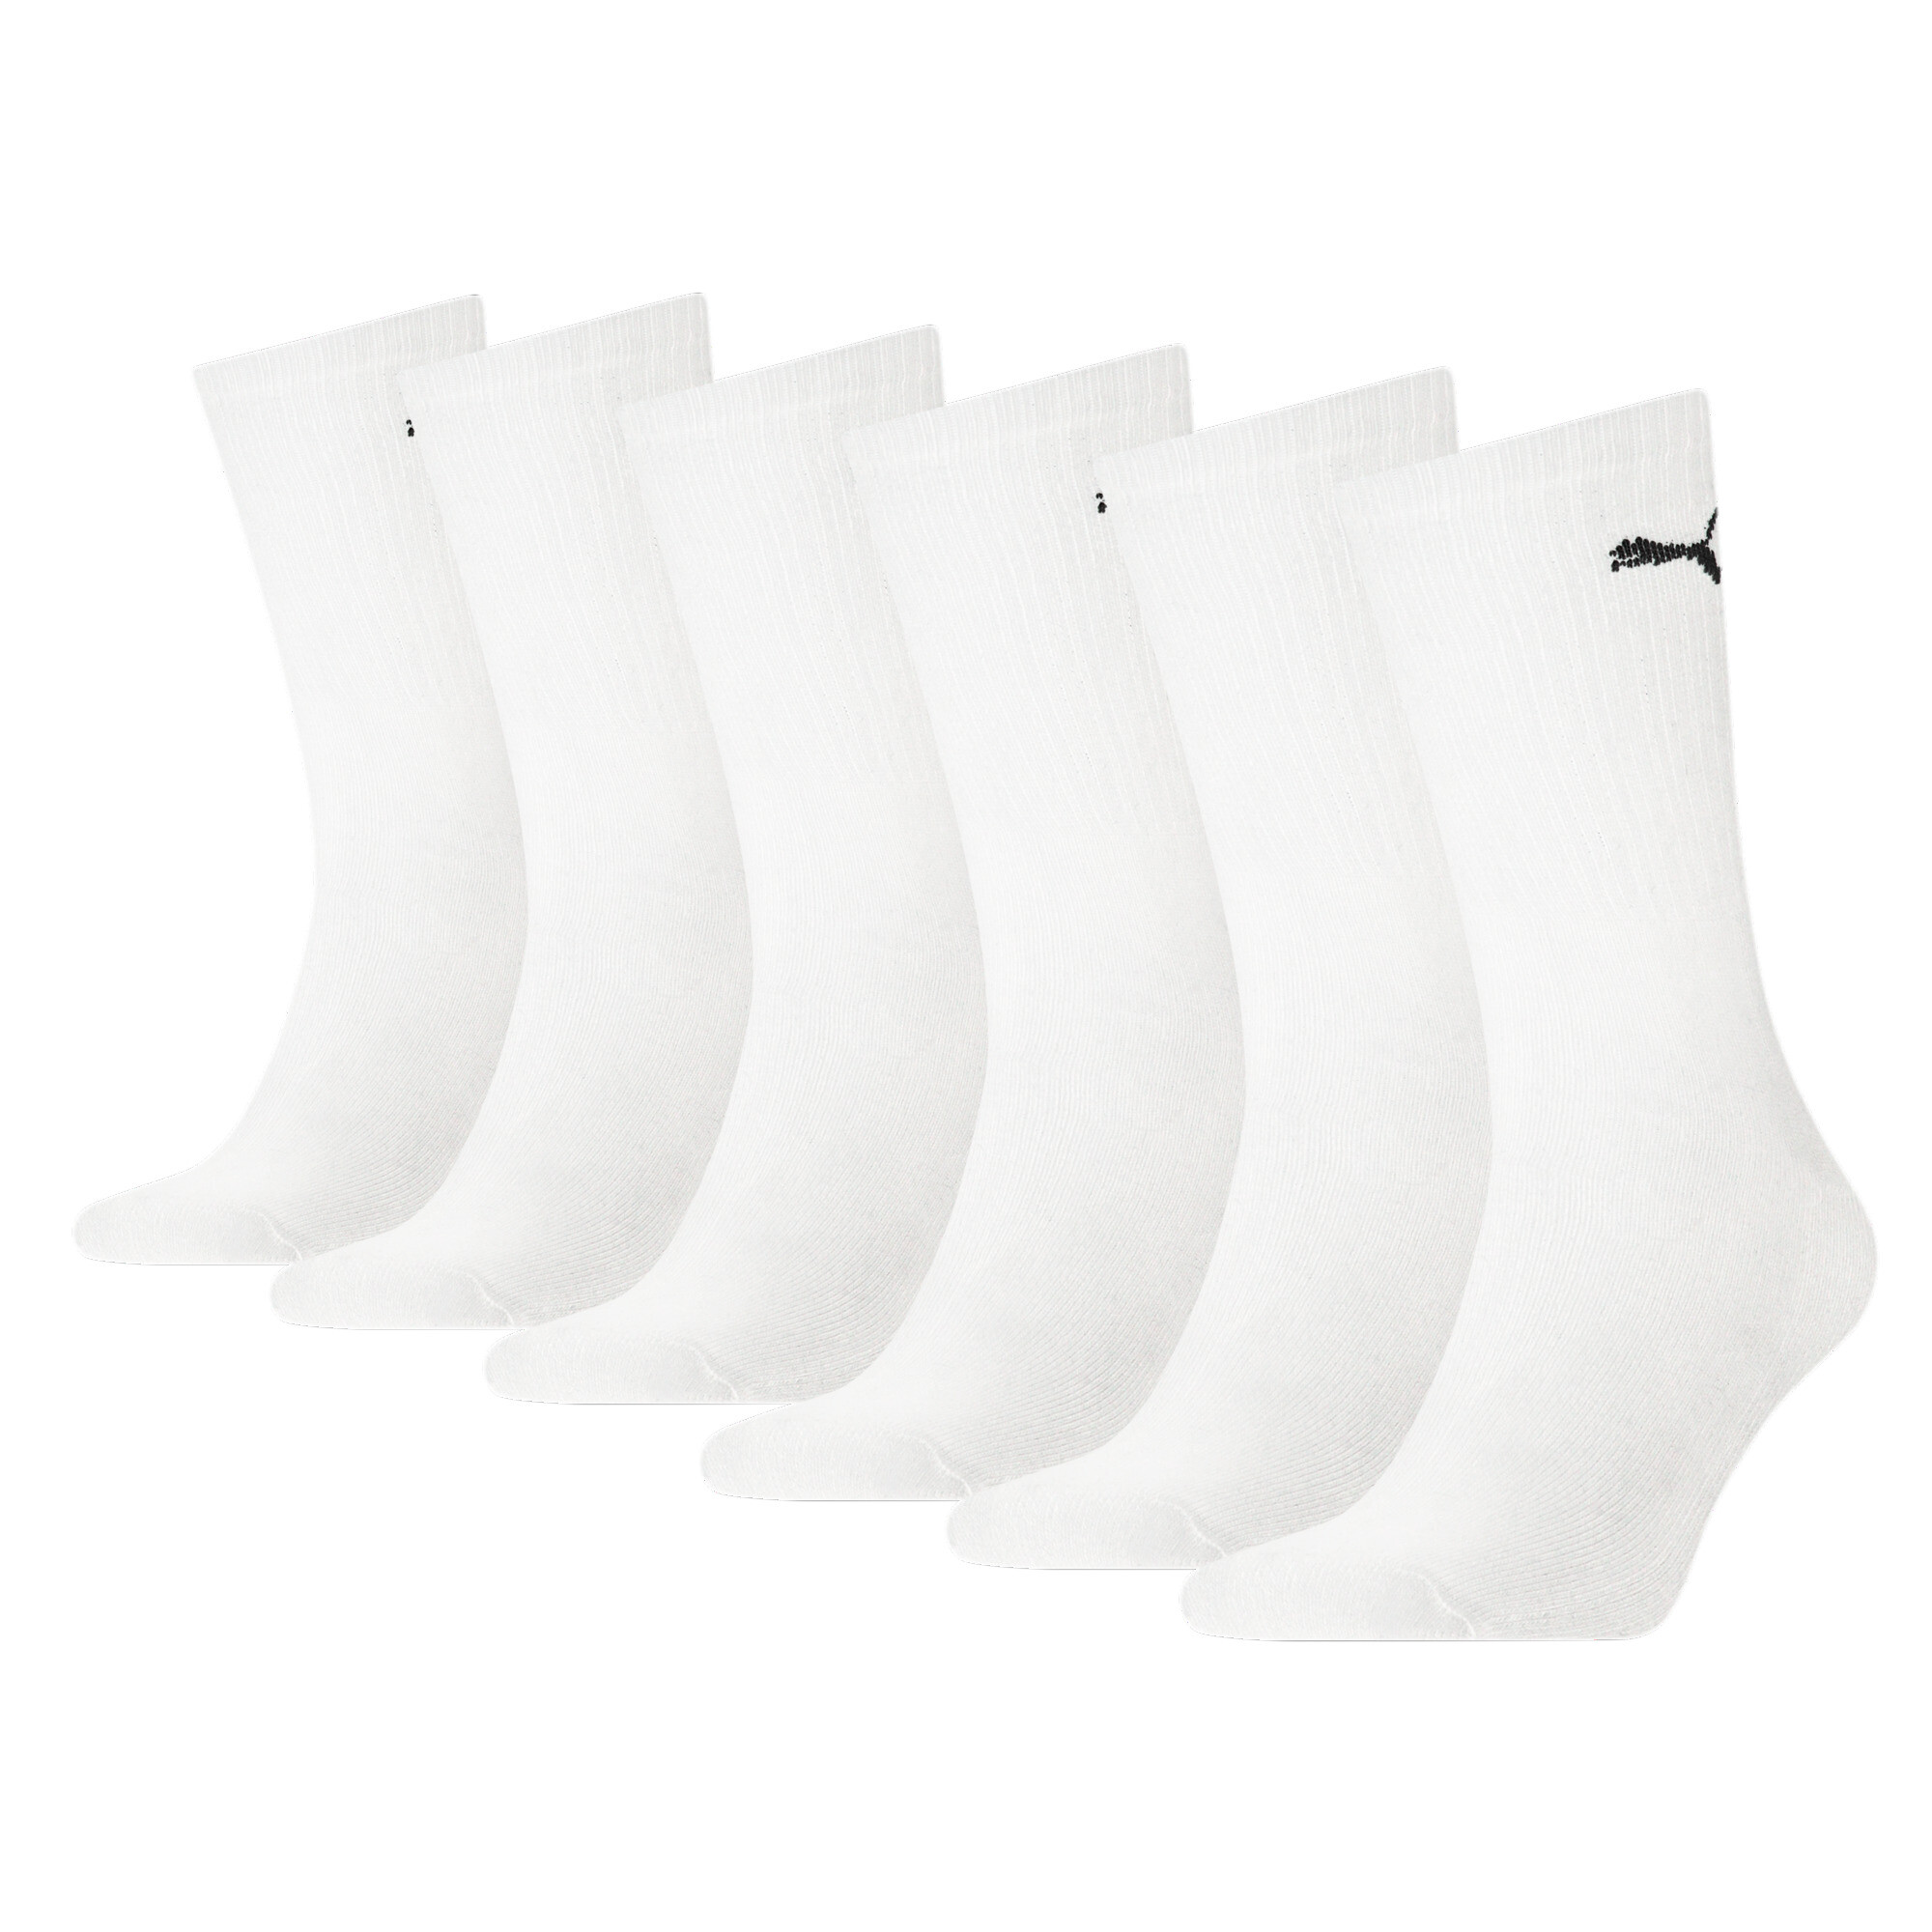 Puma Unisex Crew Shirt Socks 6 Pack, White, Size 43-46, Clothing